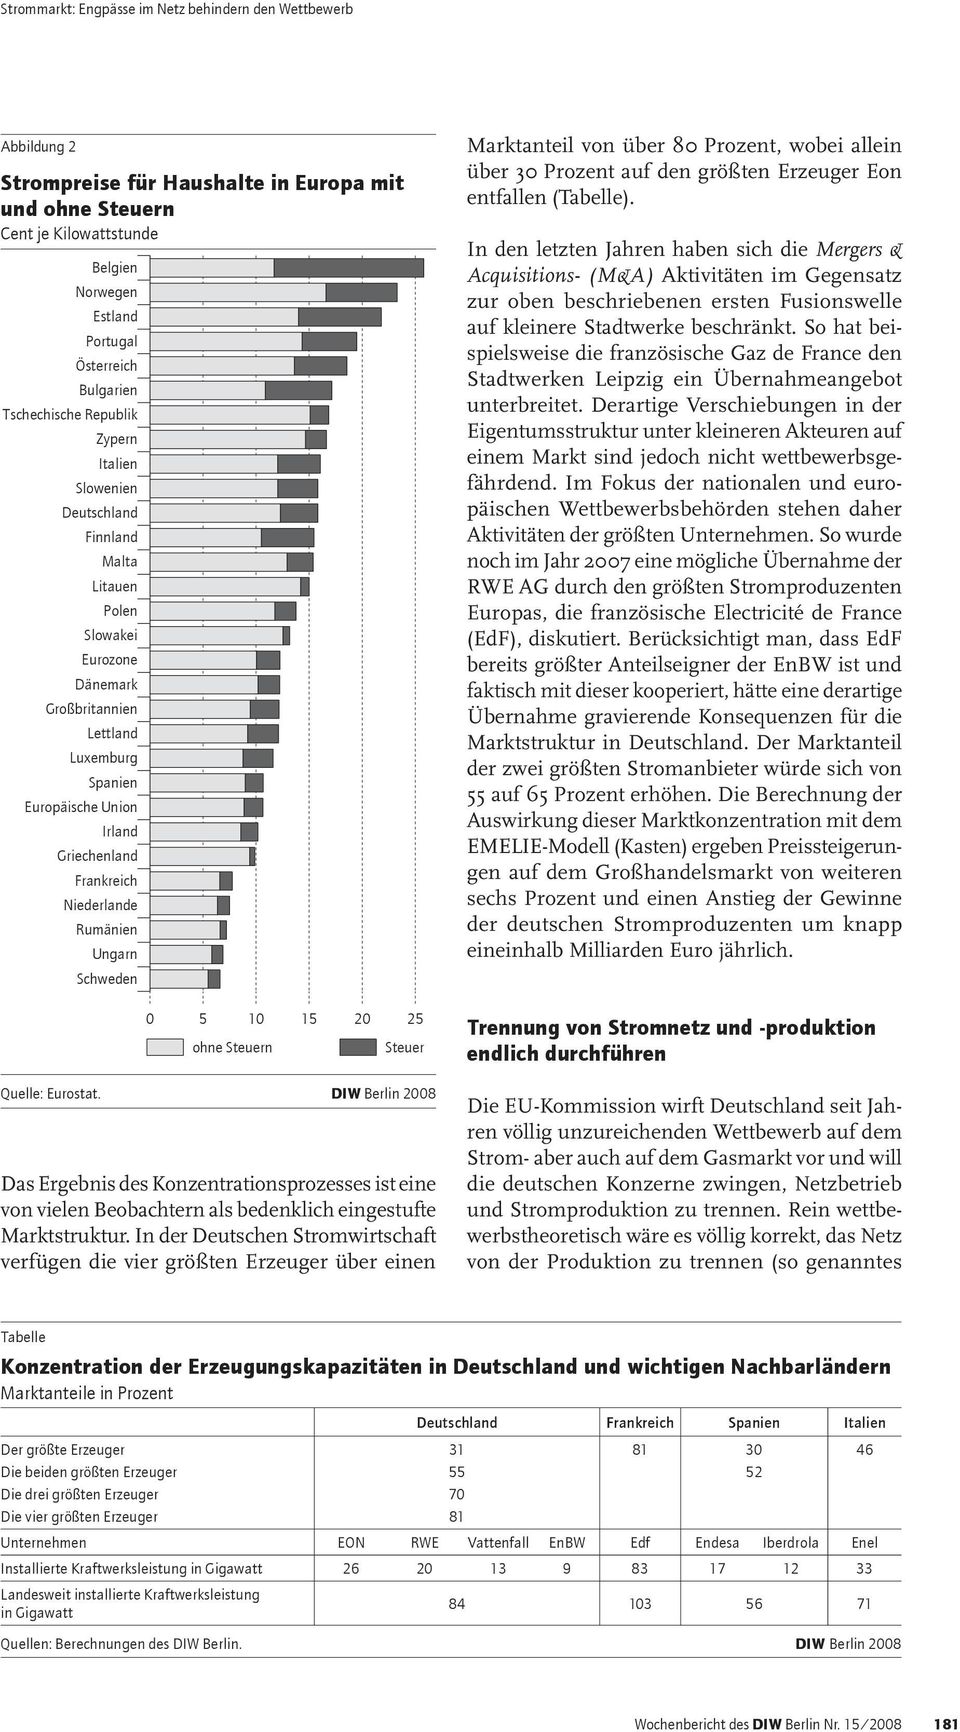 10 15 20 25 ohne Steuern Steuer Quelle: Eurostat. DIW Berlin 2008 Das Ergebnis des Konzentrationsprozesses ist eine von vielen Beobachtern als bedenklich eingestufte Marktstruktur.